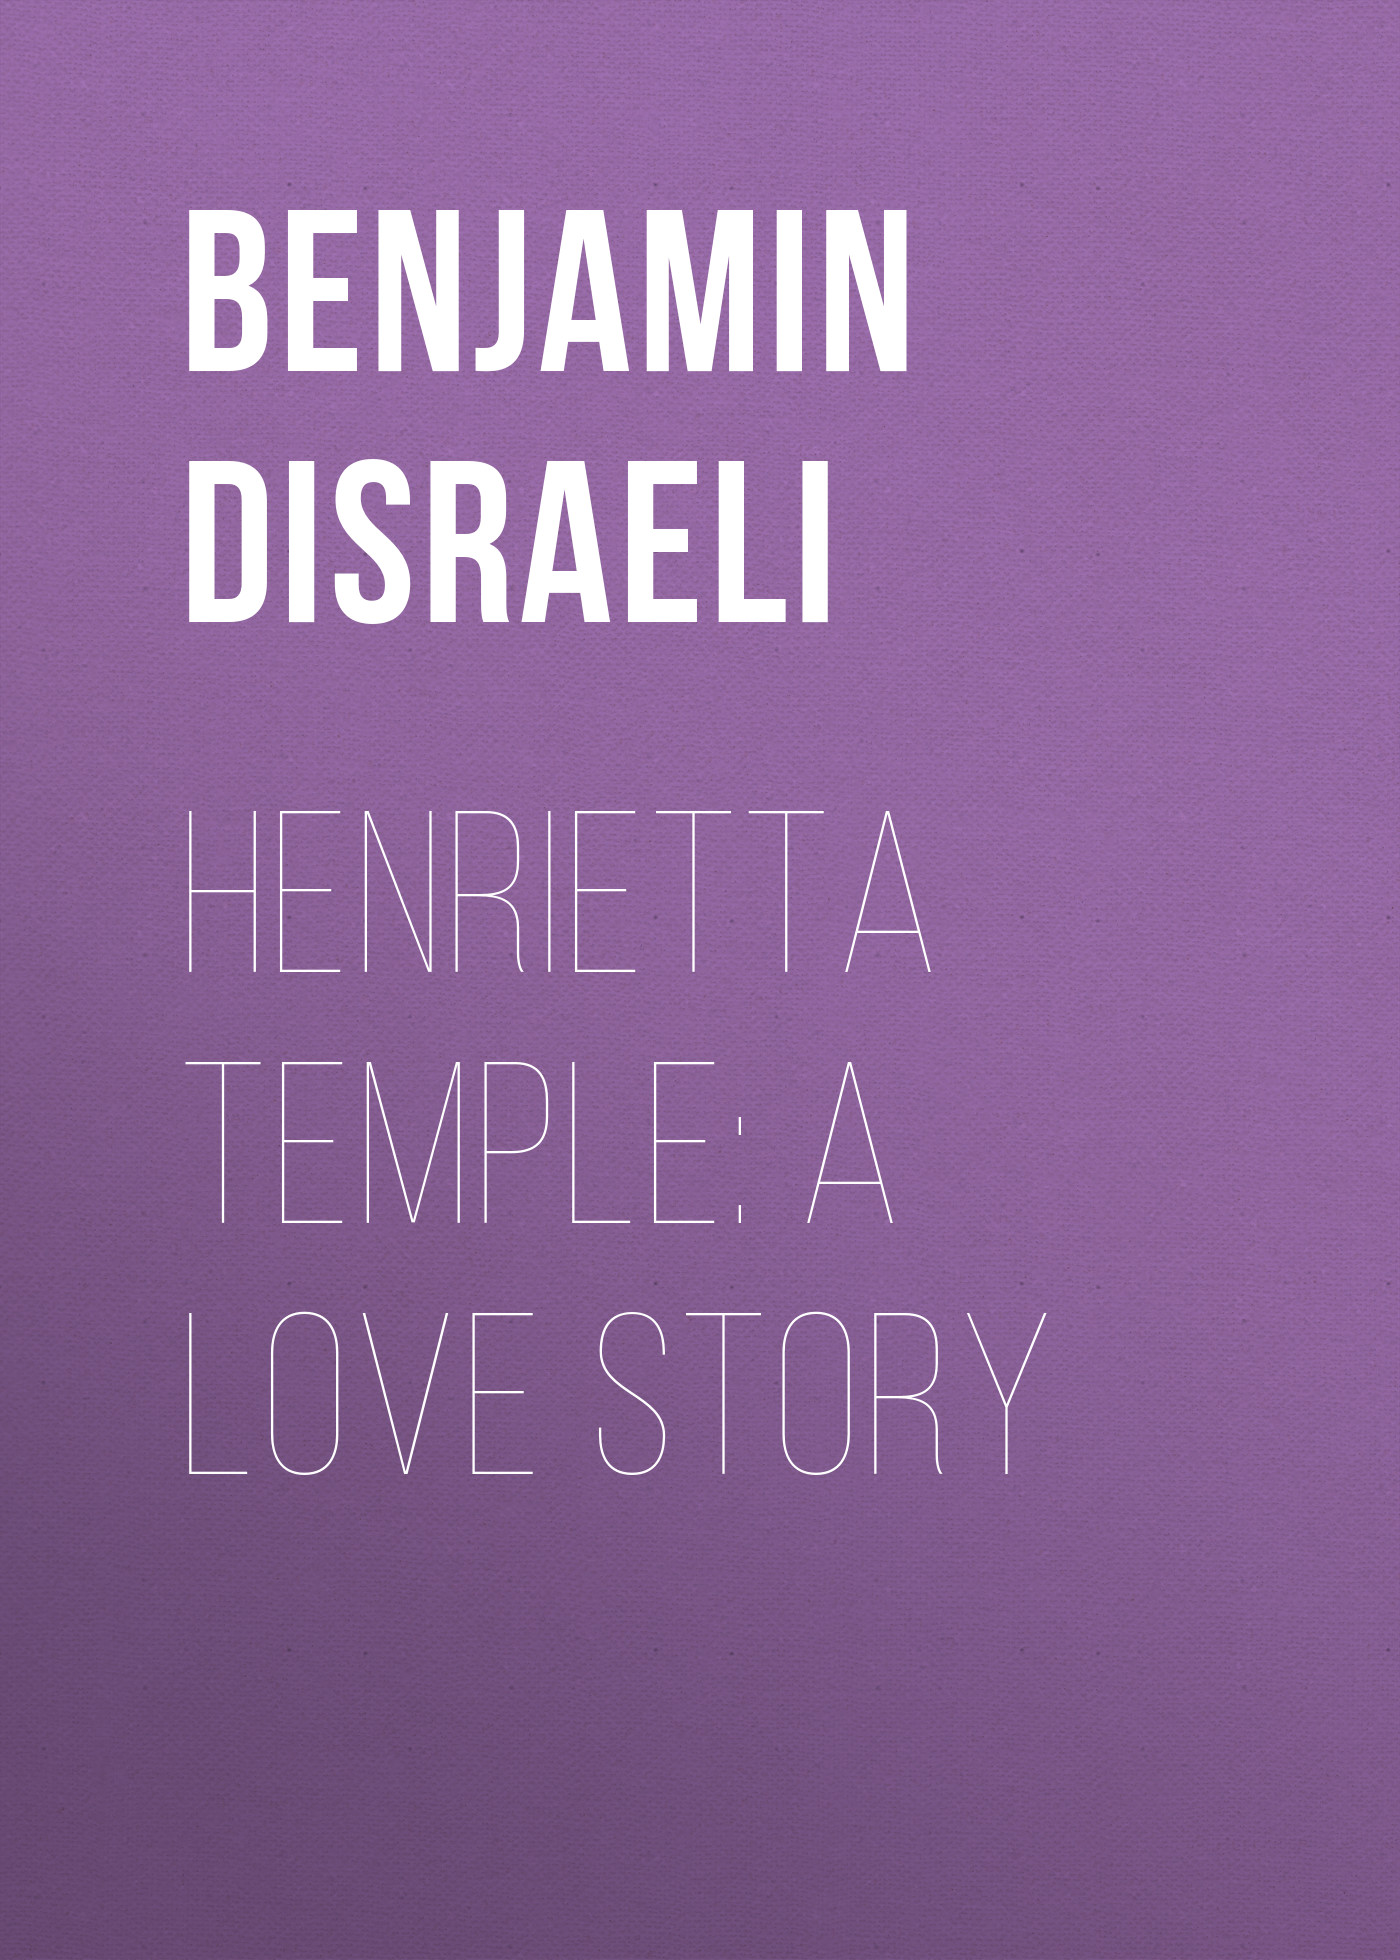 Книга Henrietta Temple: A Love Story из серии , созданная Benjamin Disraeli, может относится к жанру Литература 19 века, Зарубежная старинная литература, Зарубежная классика, Зарубежные любовные романы. Стоимость электронной книги Henrietta Temple: A Love Story с идентификатором 36363270 составляет 0 руб.